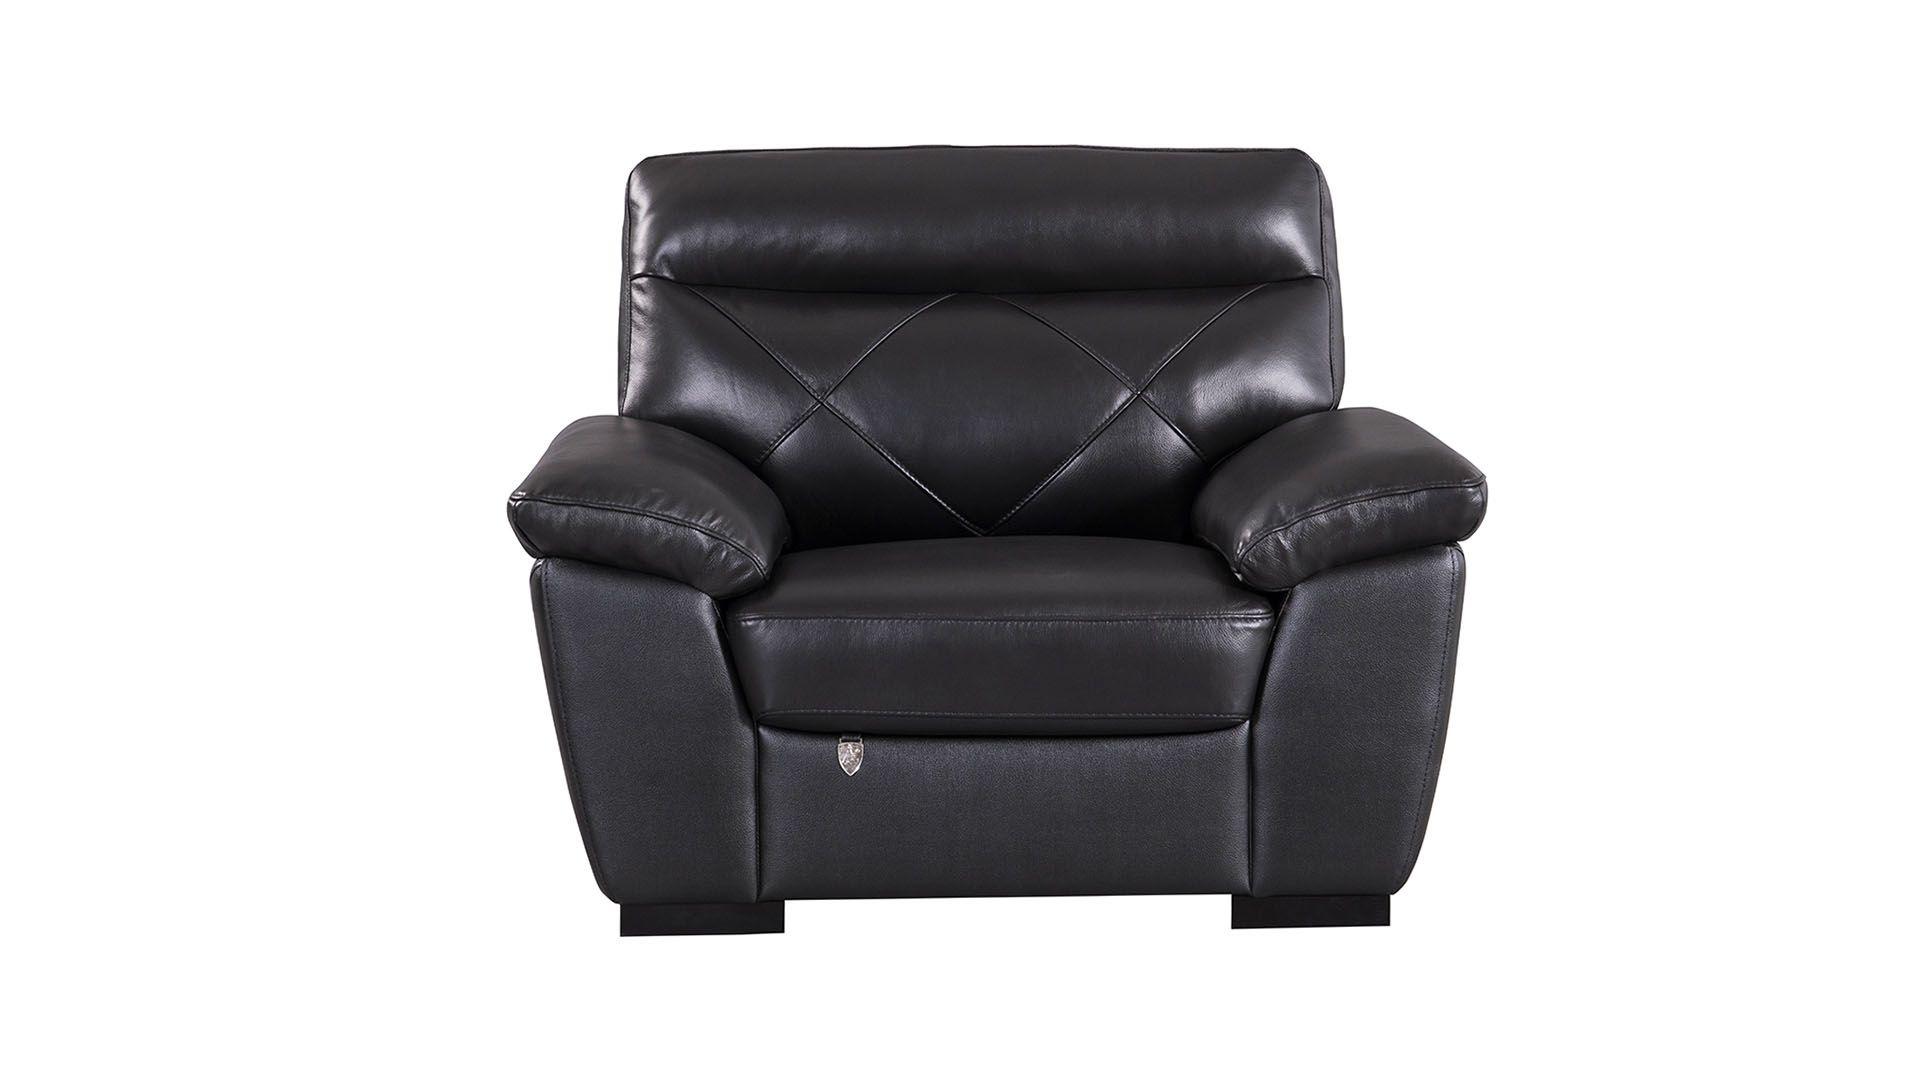 Contemporary, Modern Arm Chair EK081-BK-CHR EK081-BK-CHR in Black Italian Leather